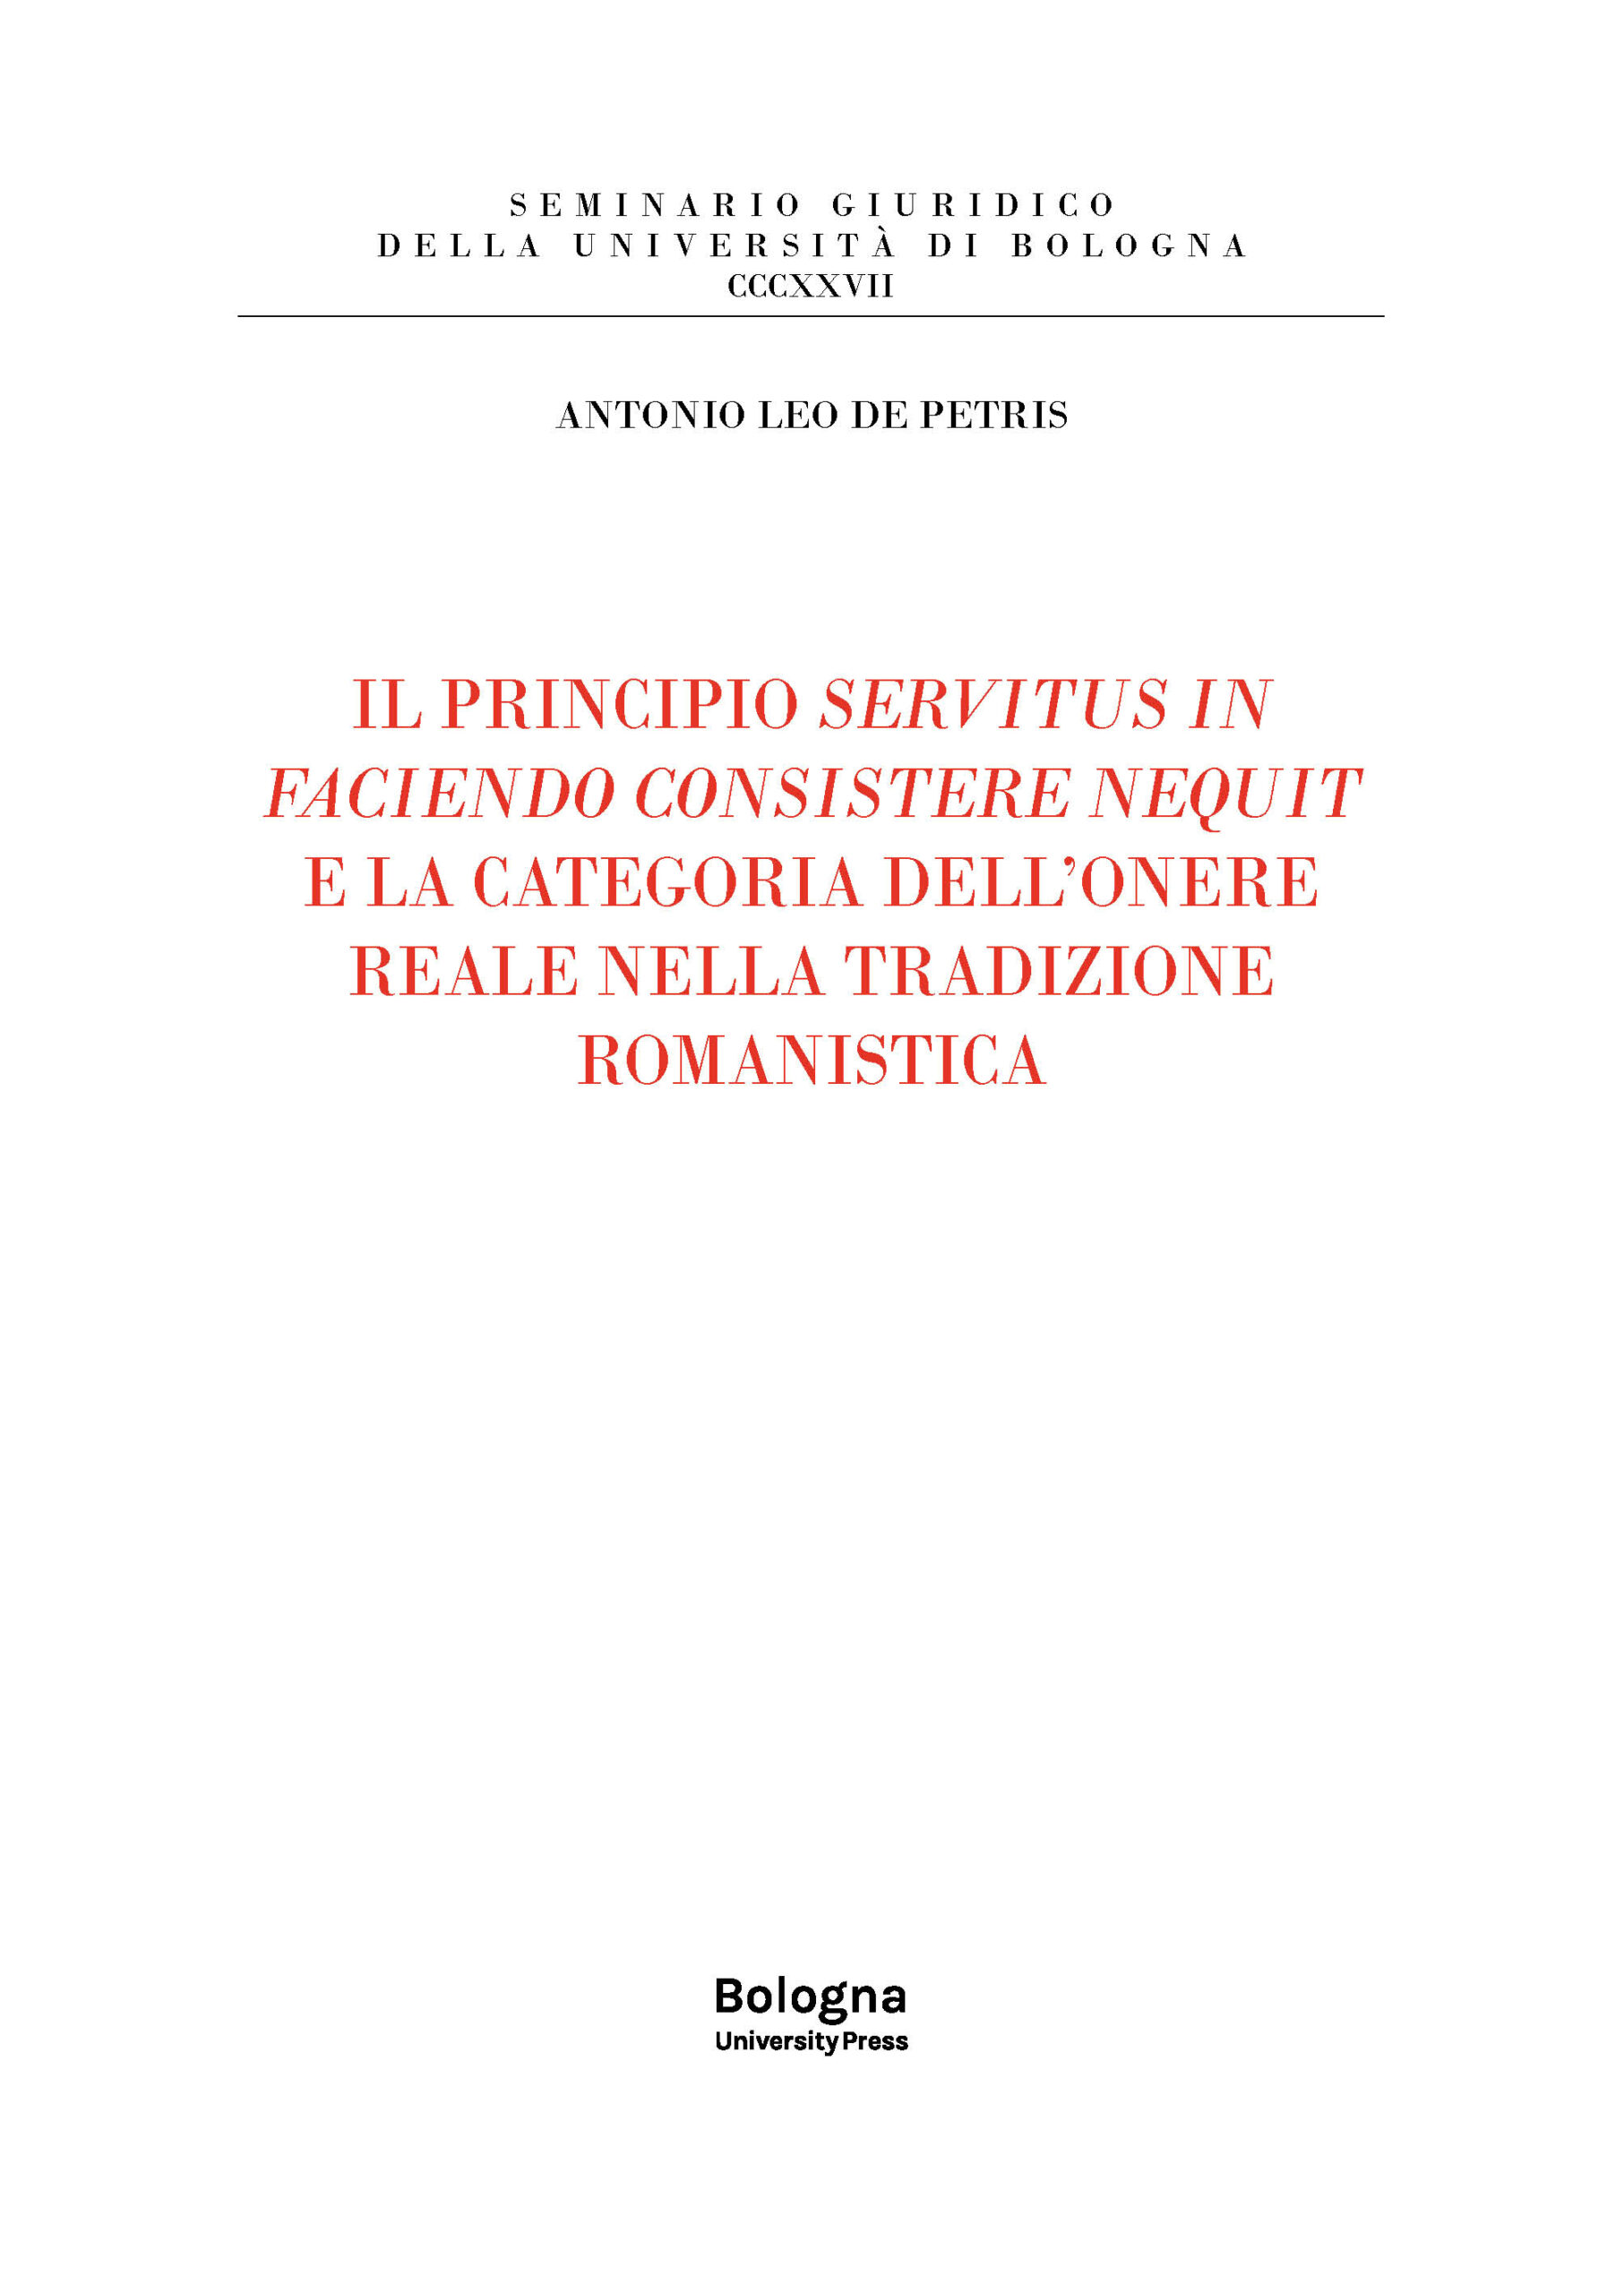 IL PRINCIPIO SERVITUS IN FACIENDO CONSISTERE NEQUIT E LA CATEGORIA DELL’ONERE REALE NELLA TRADIZIONE ROMANISTICA - Bologna University Press